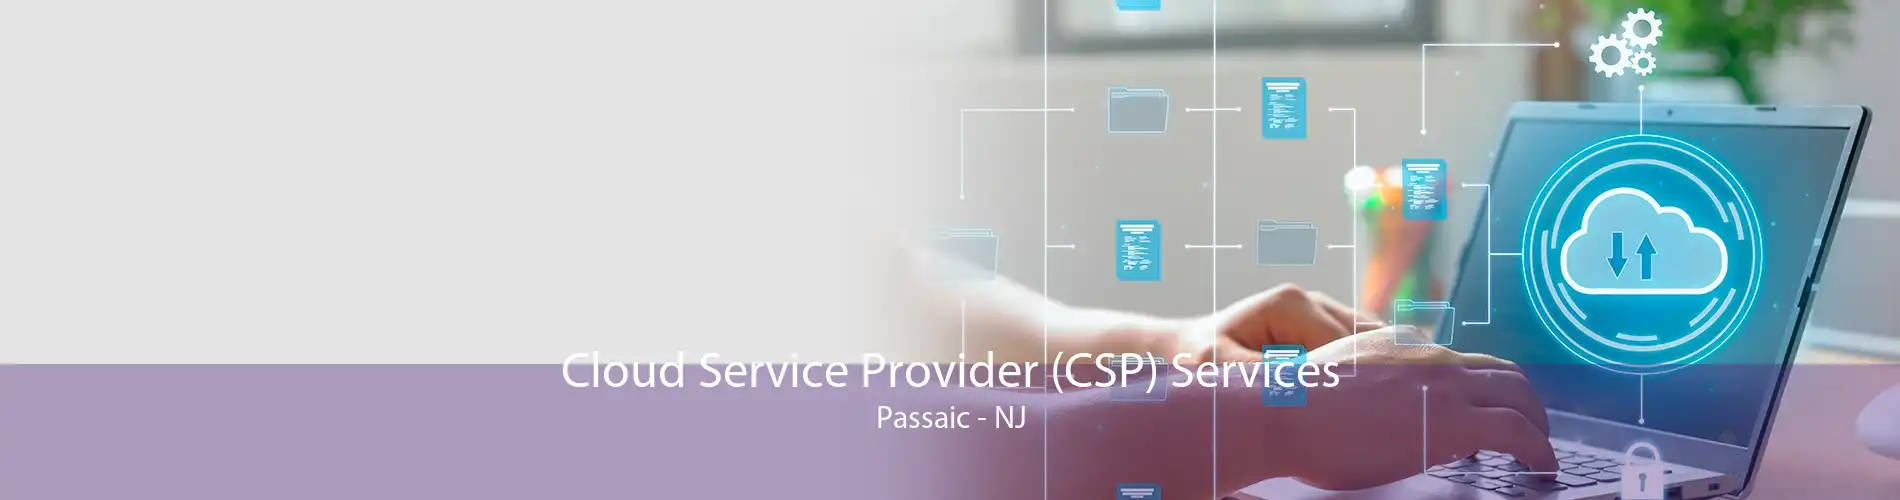 Cloud Service Provider (CSP) Services Passaic - NJ